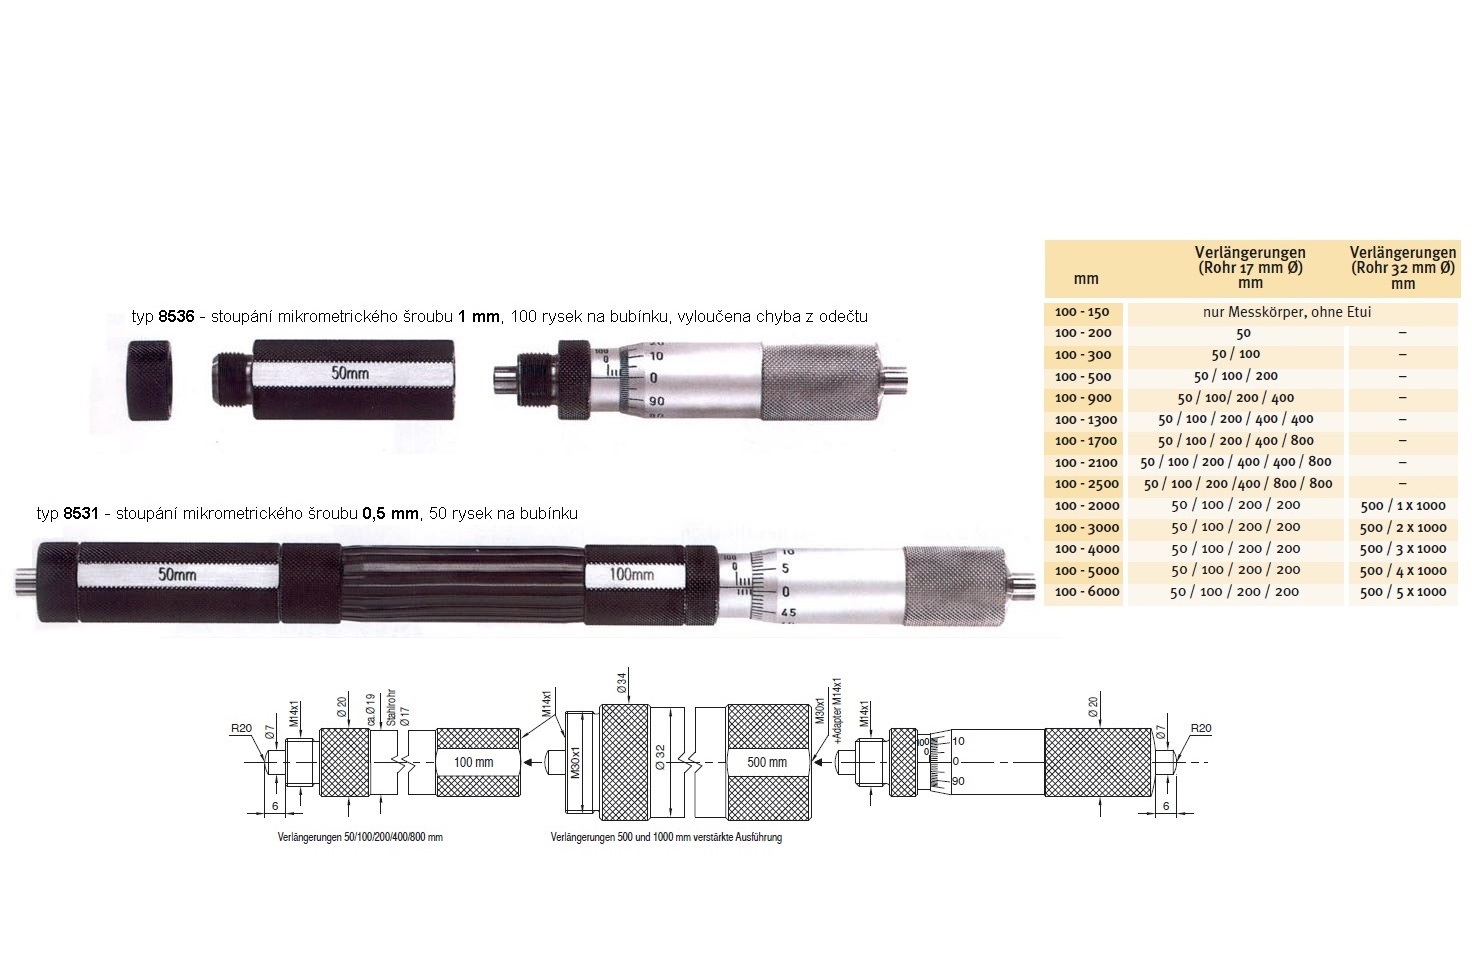 Mikrometrický odpich skládací HARTIG 100-300 mm, stoupání šroubu 1 mm, doteky tvrdokov